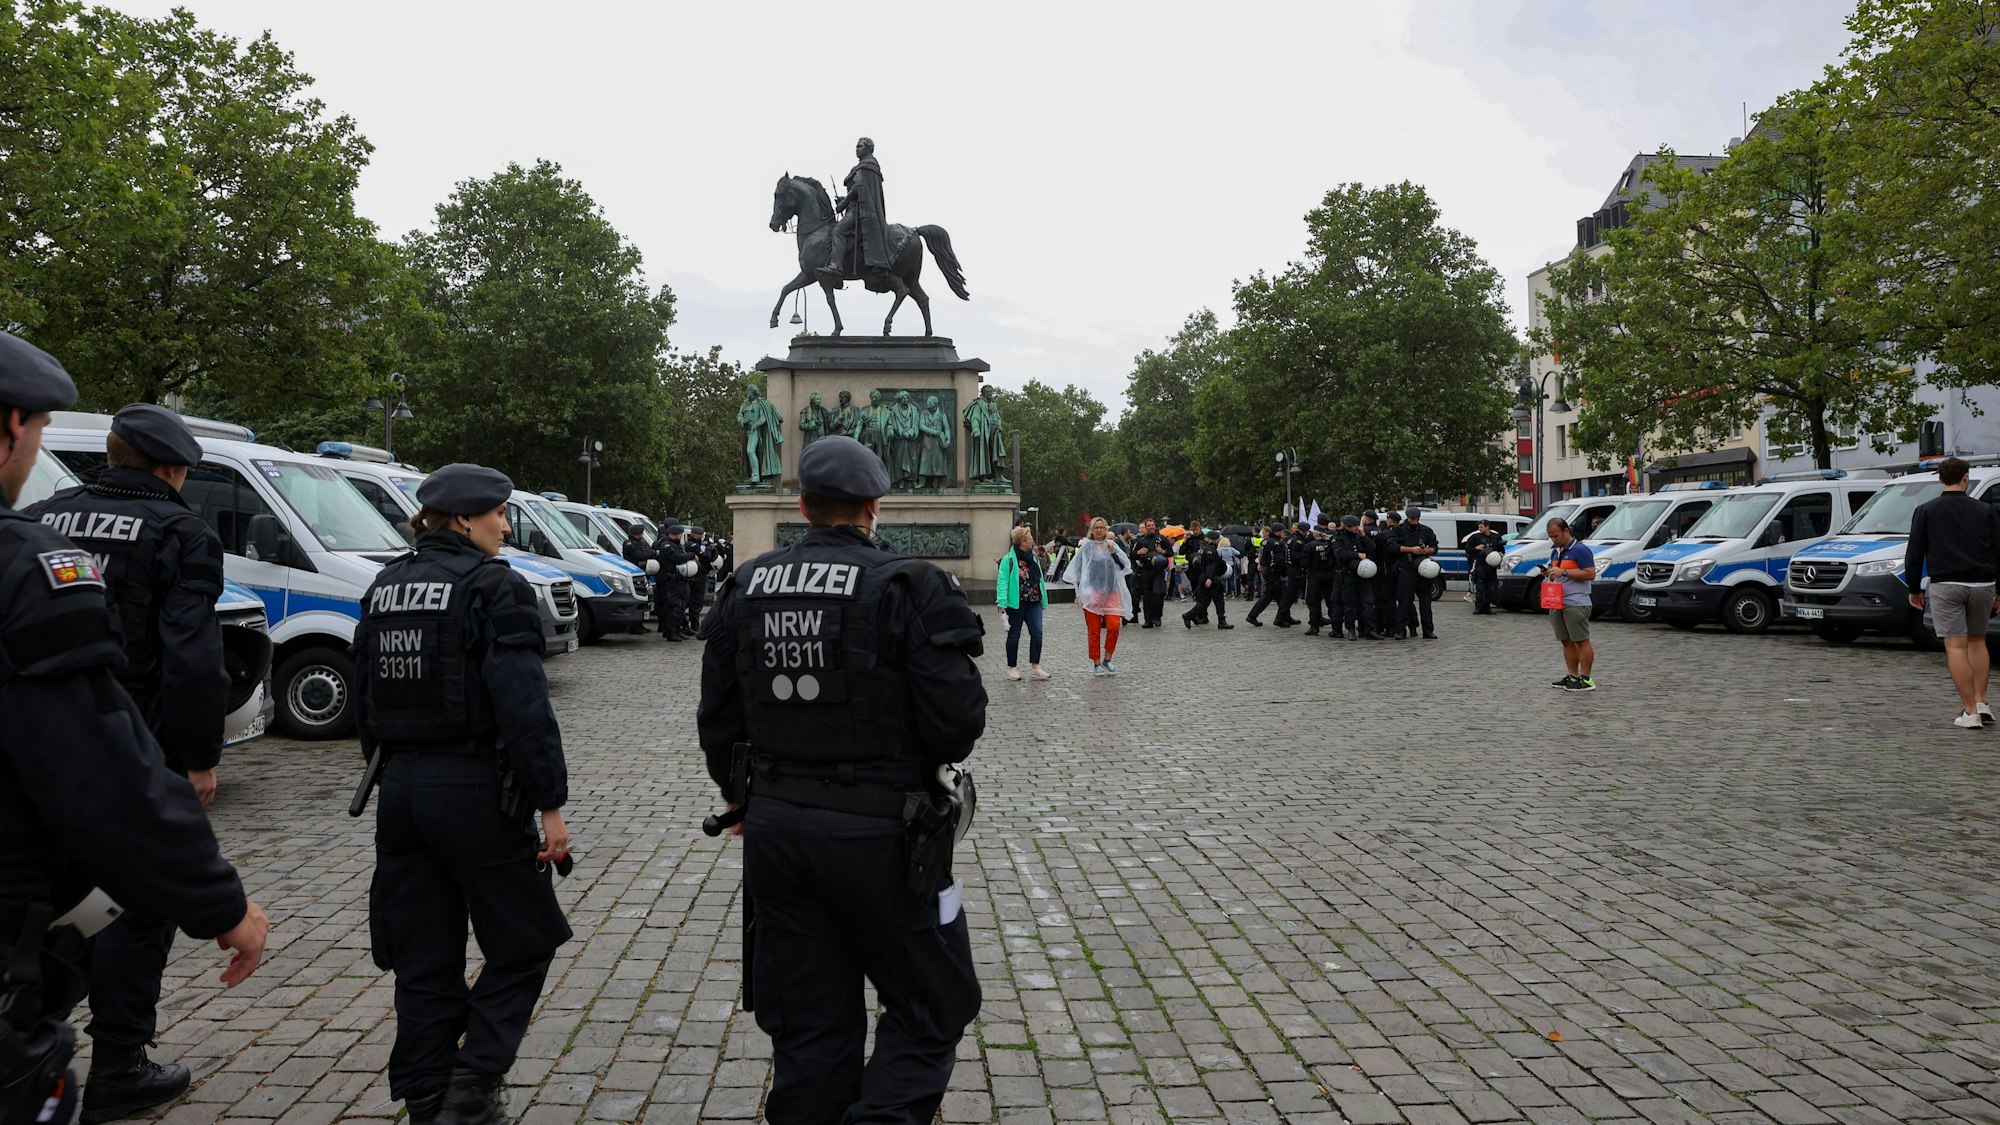 Demonstration am Kölner Heumarkt: Dutzende Polizistinnen und Polizisten beobachten die Demonstration von „NRW erwacht“ und den Gegenprotest.

